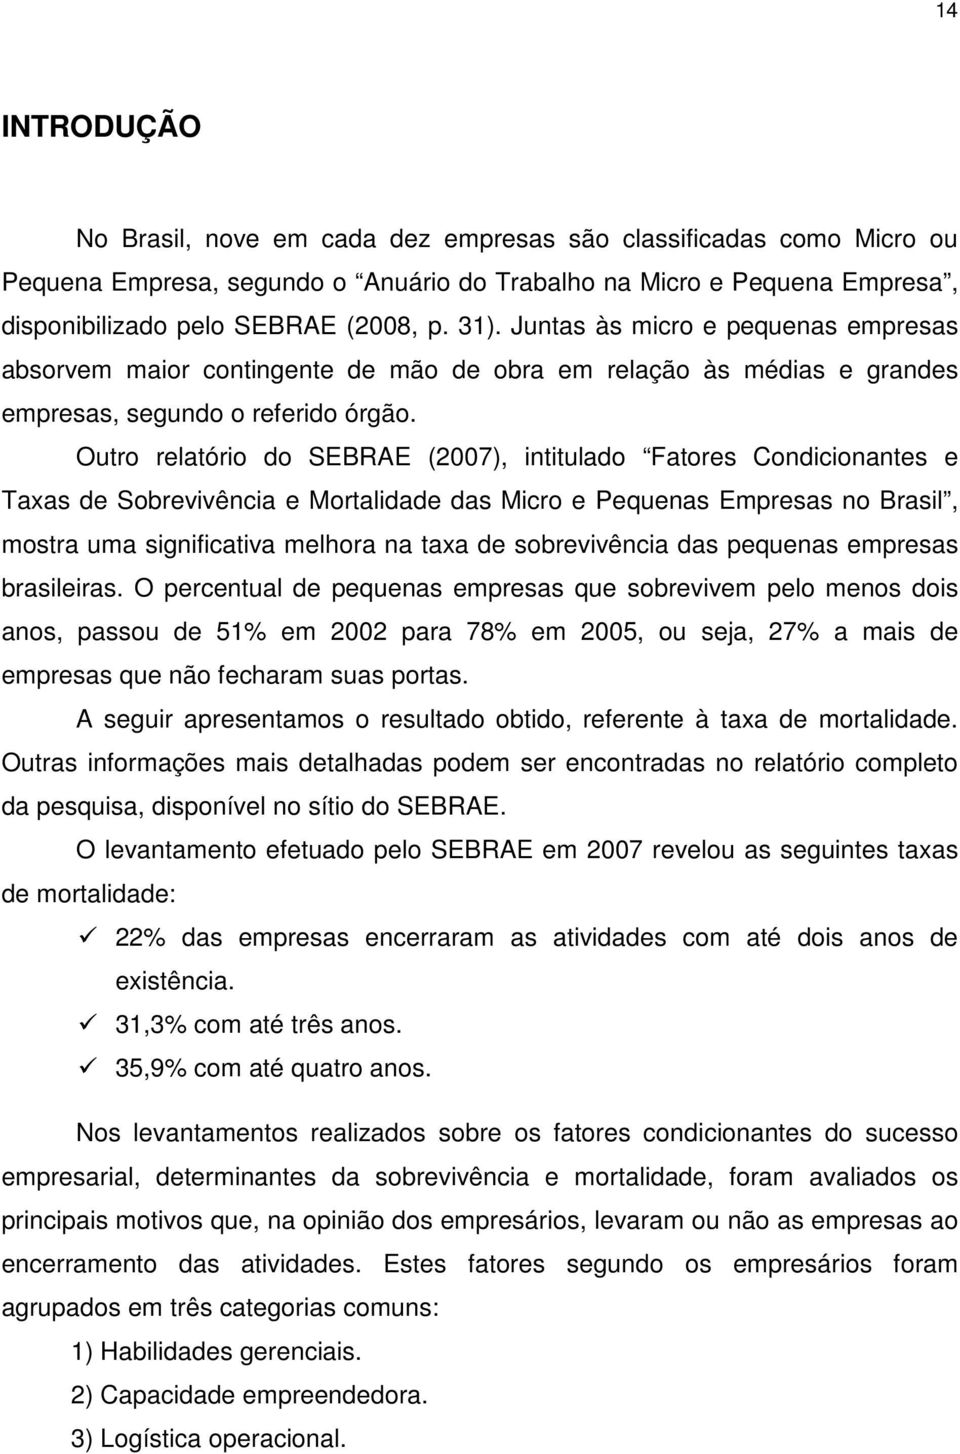 Outro relatório do SEBRAE (2007), intitulado Fatores Condicionantes e Taxas de Sobrevivência e Mortalidade das Micro e Pequenas Empresas no Brasil, mostra uma significativa melhora na taxa de